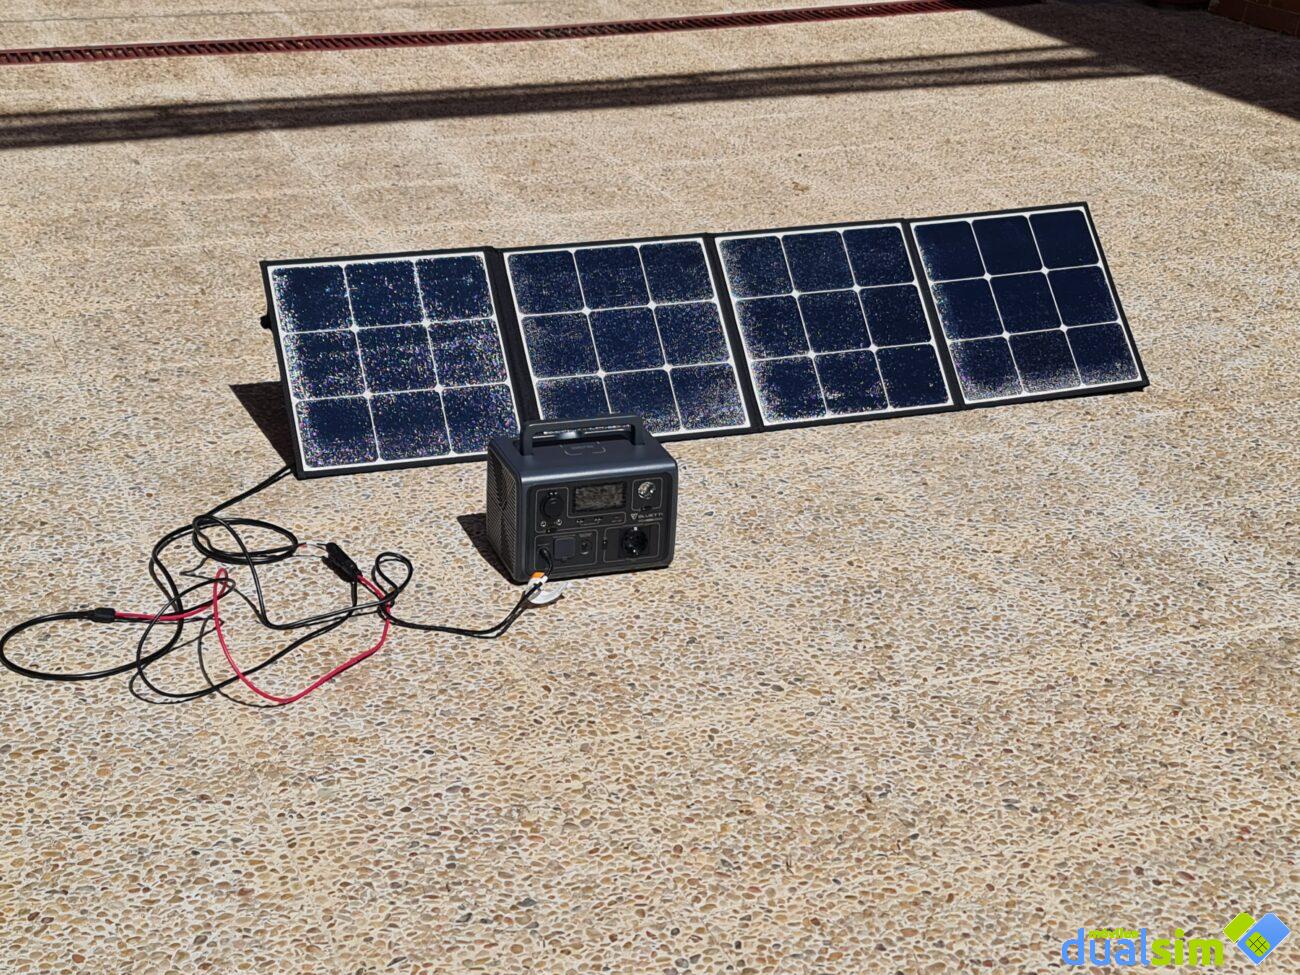 Prueba práctica de la central eléctrica Bluetti EB3A con panel solar de 200  W: Un pequeño cubo de energía -  Analisis